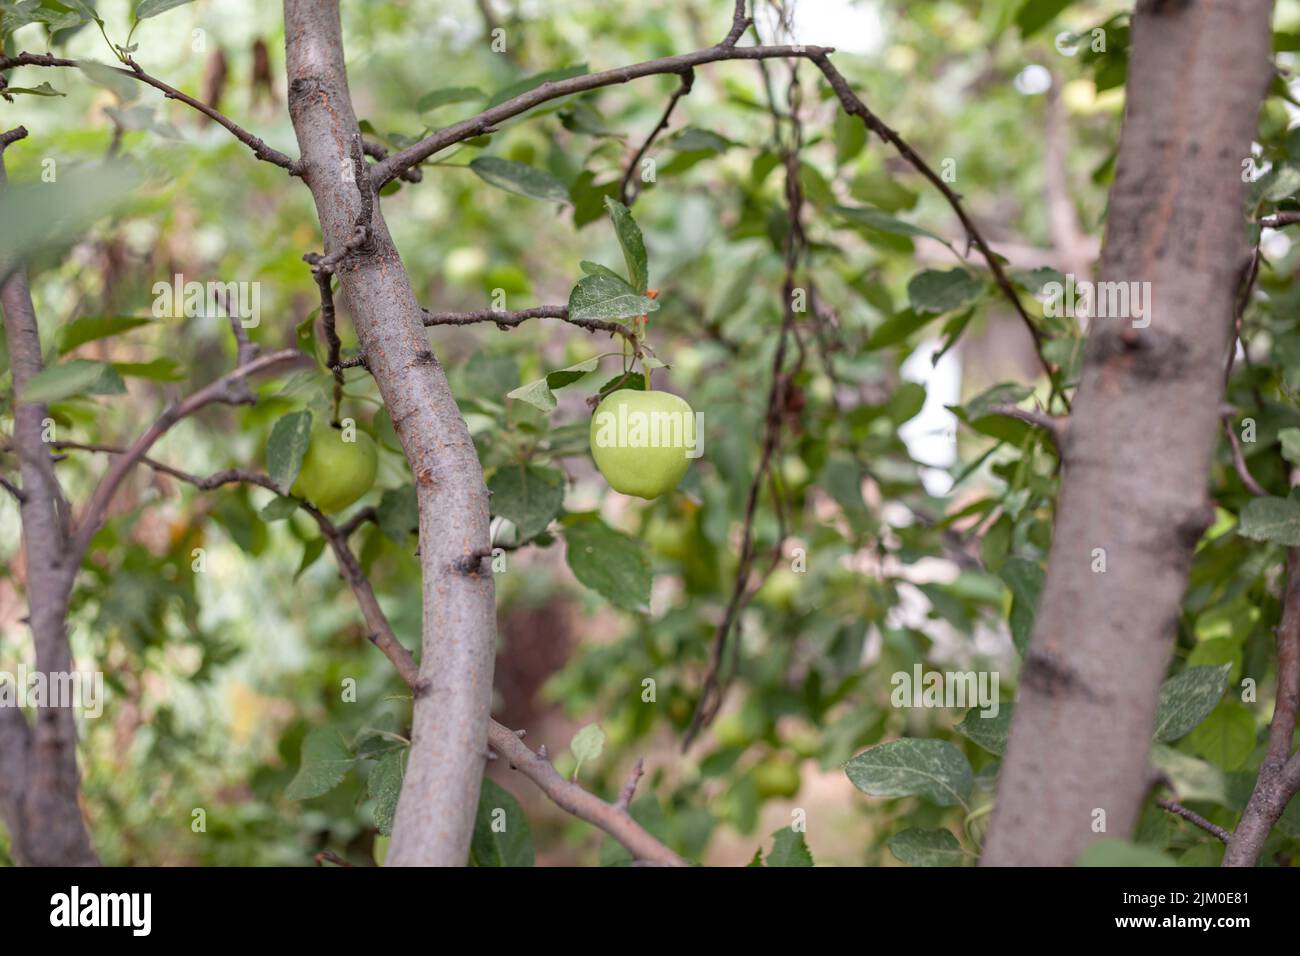 Les pommes vertes pèsent sur une branche d'arbre dans le jardin. Pommes non mûres. Pommes touchées par la maladie, sur la branche d'un pommier dans le jardin. Banque D'Images